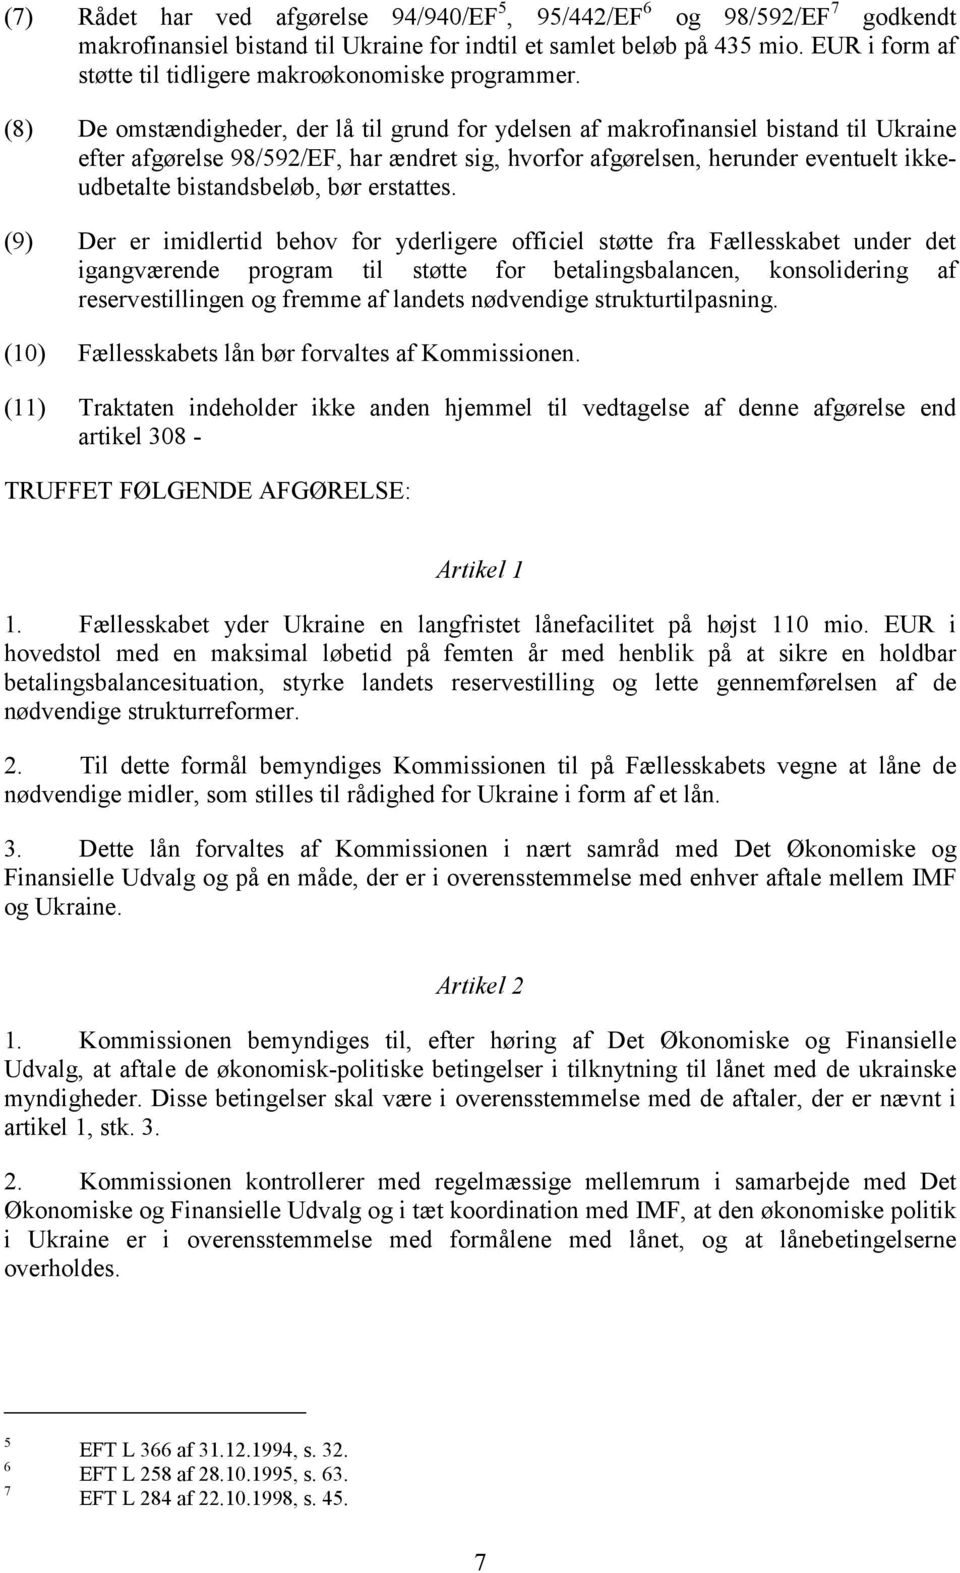 (8) De omstændigheder, der lå til grund for ydelsen af makrofinansiel bistand til Ukraine efter afgørelse 98/592/EF, har ændret sig, hvorfor afgørelsen, herunder eventuelt ikkeudbetalte